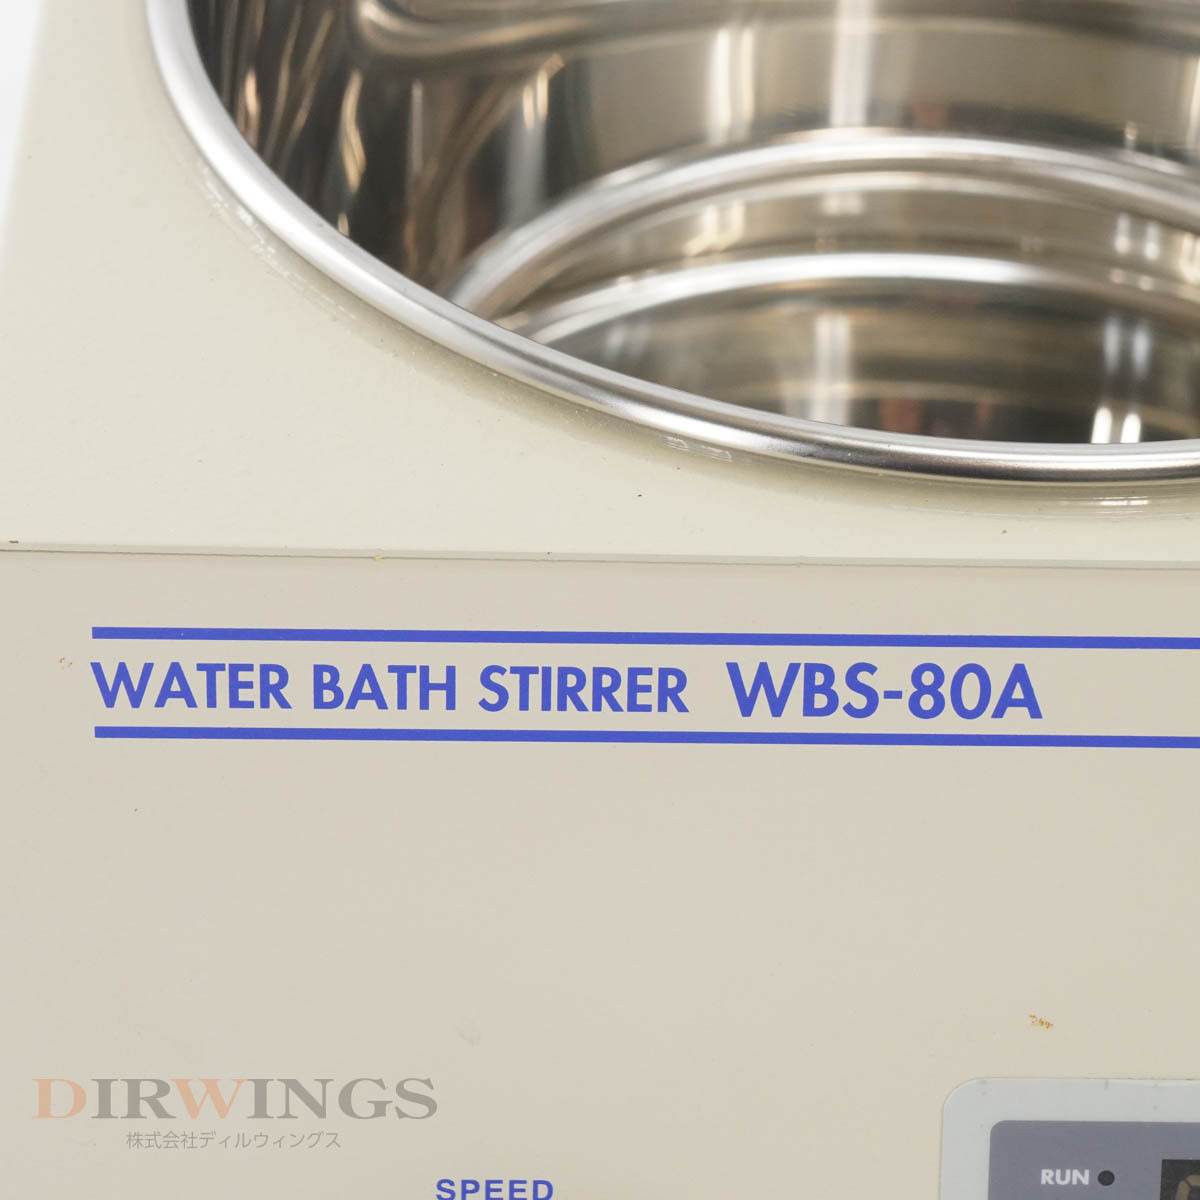 [JB] 保証なし WBS-80A AS ONE WATER BATH STIRRER アズワン ウォーターバススターラー[05681-0013]_画像5